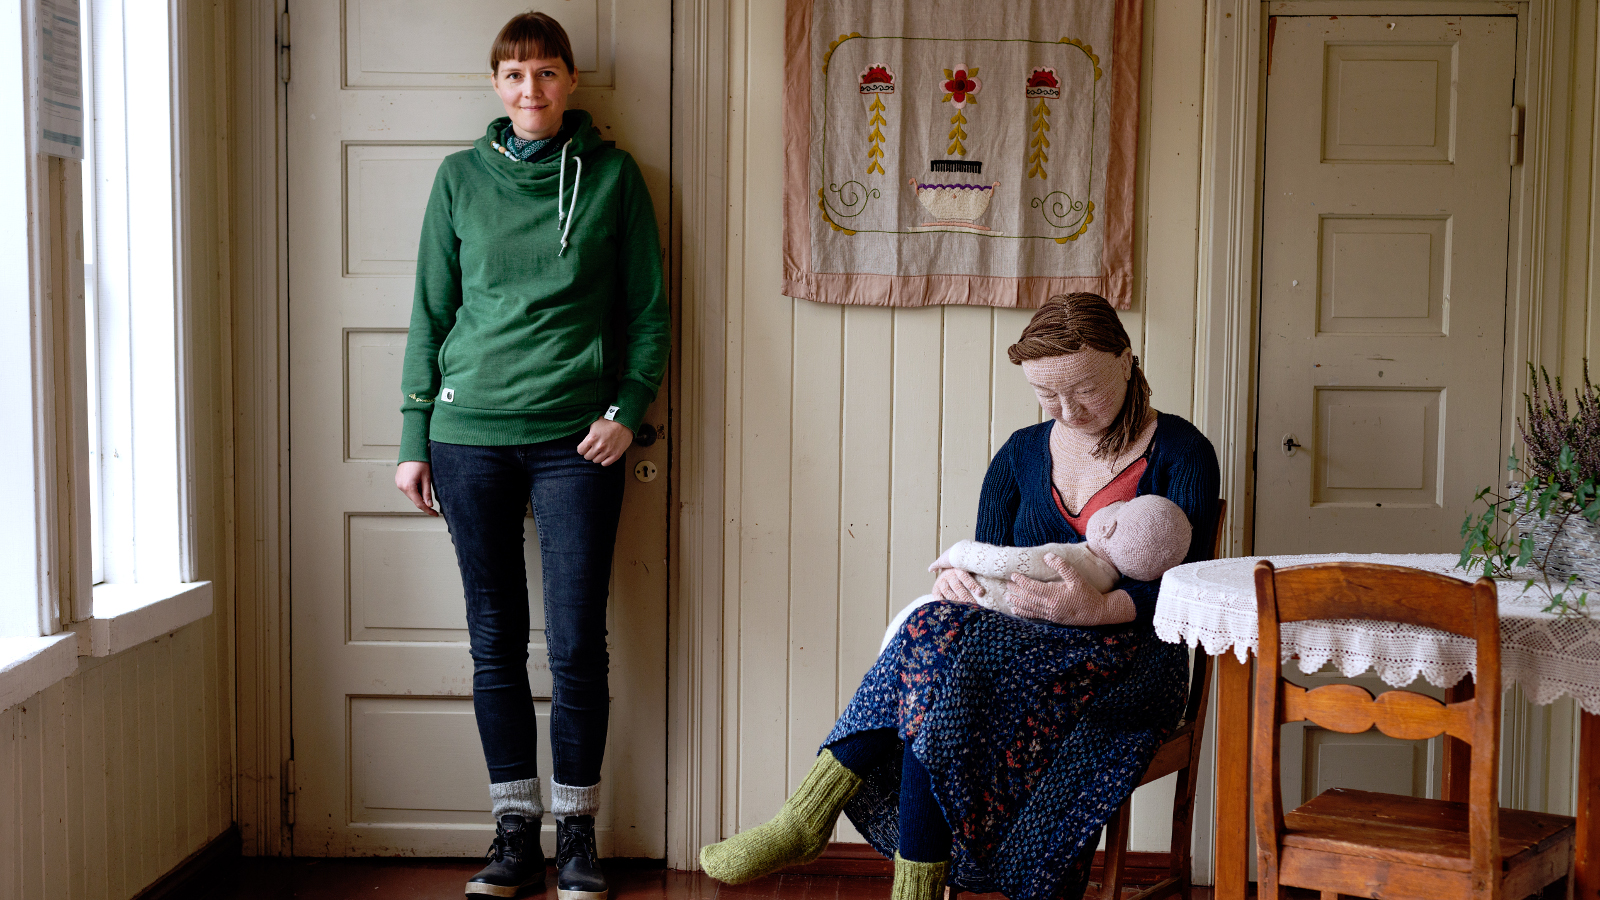 Kuvassa on Liisa Hietanen seisomassa huoneen seinään nojaten ja vierellä on tuolissa istumassa nainen, jolla on vauva sylissään. Nämä ovat virkattuja.